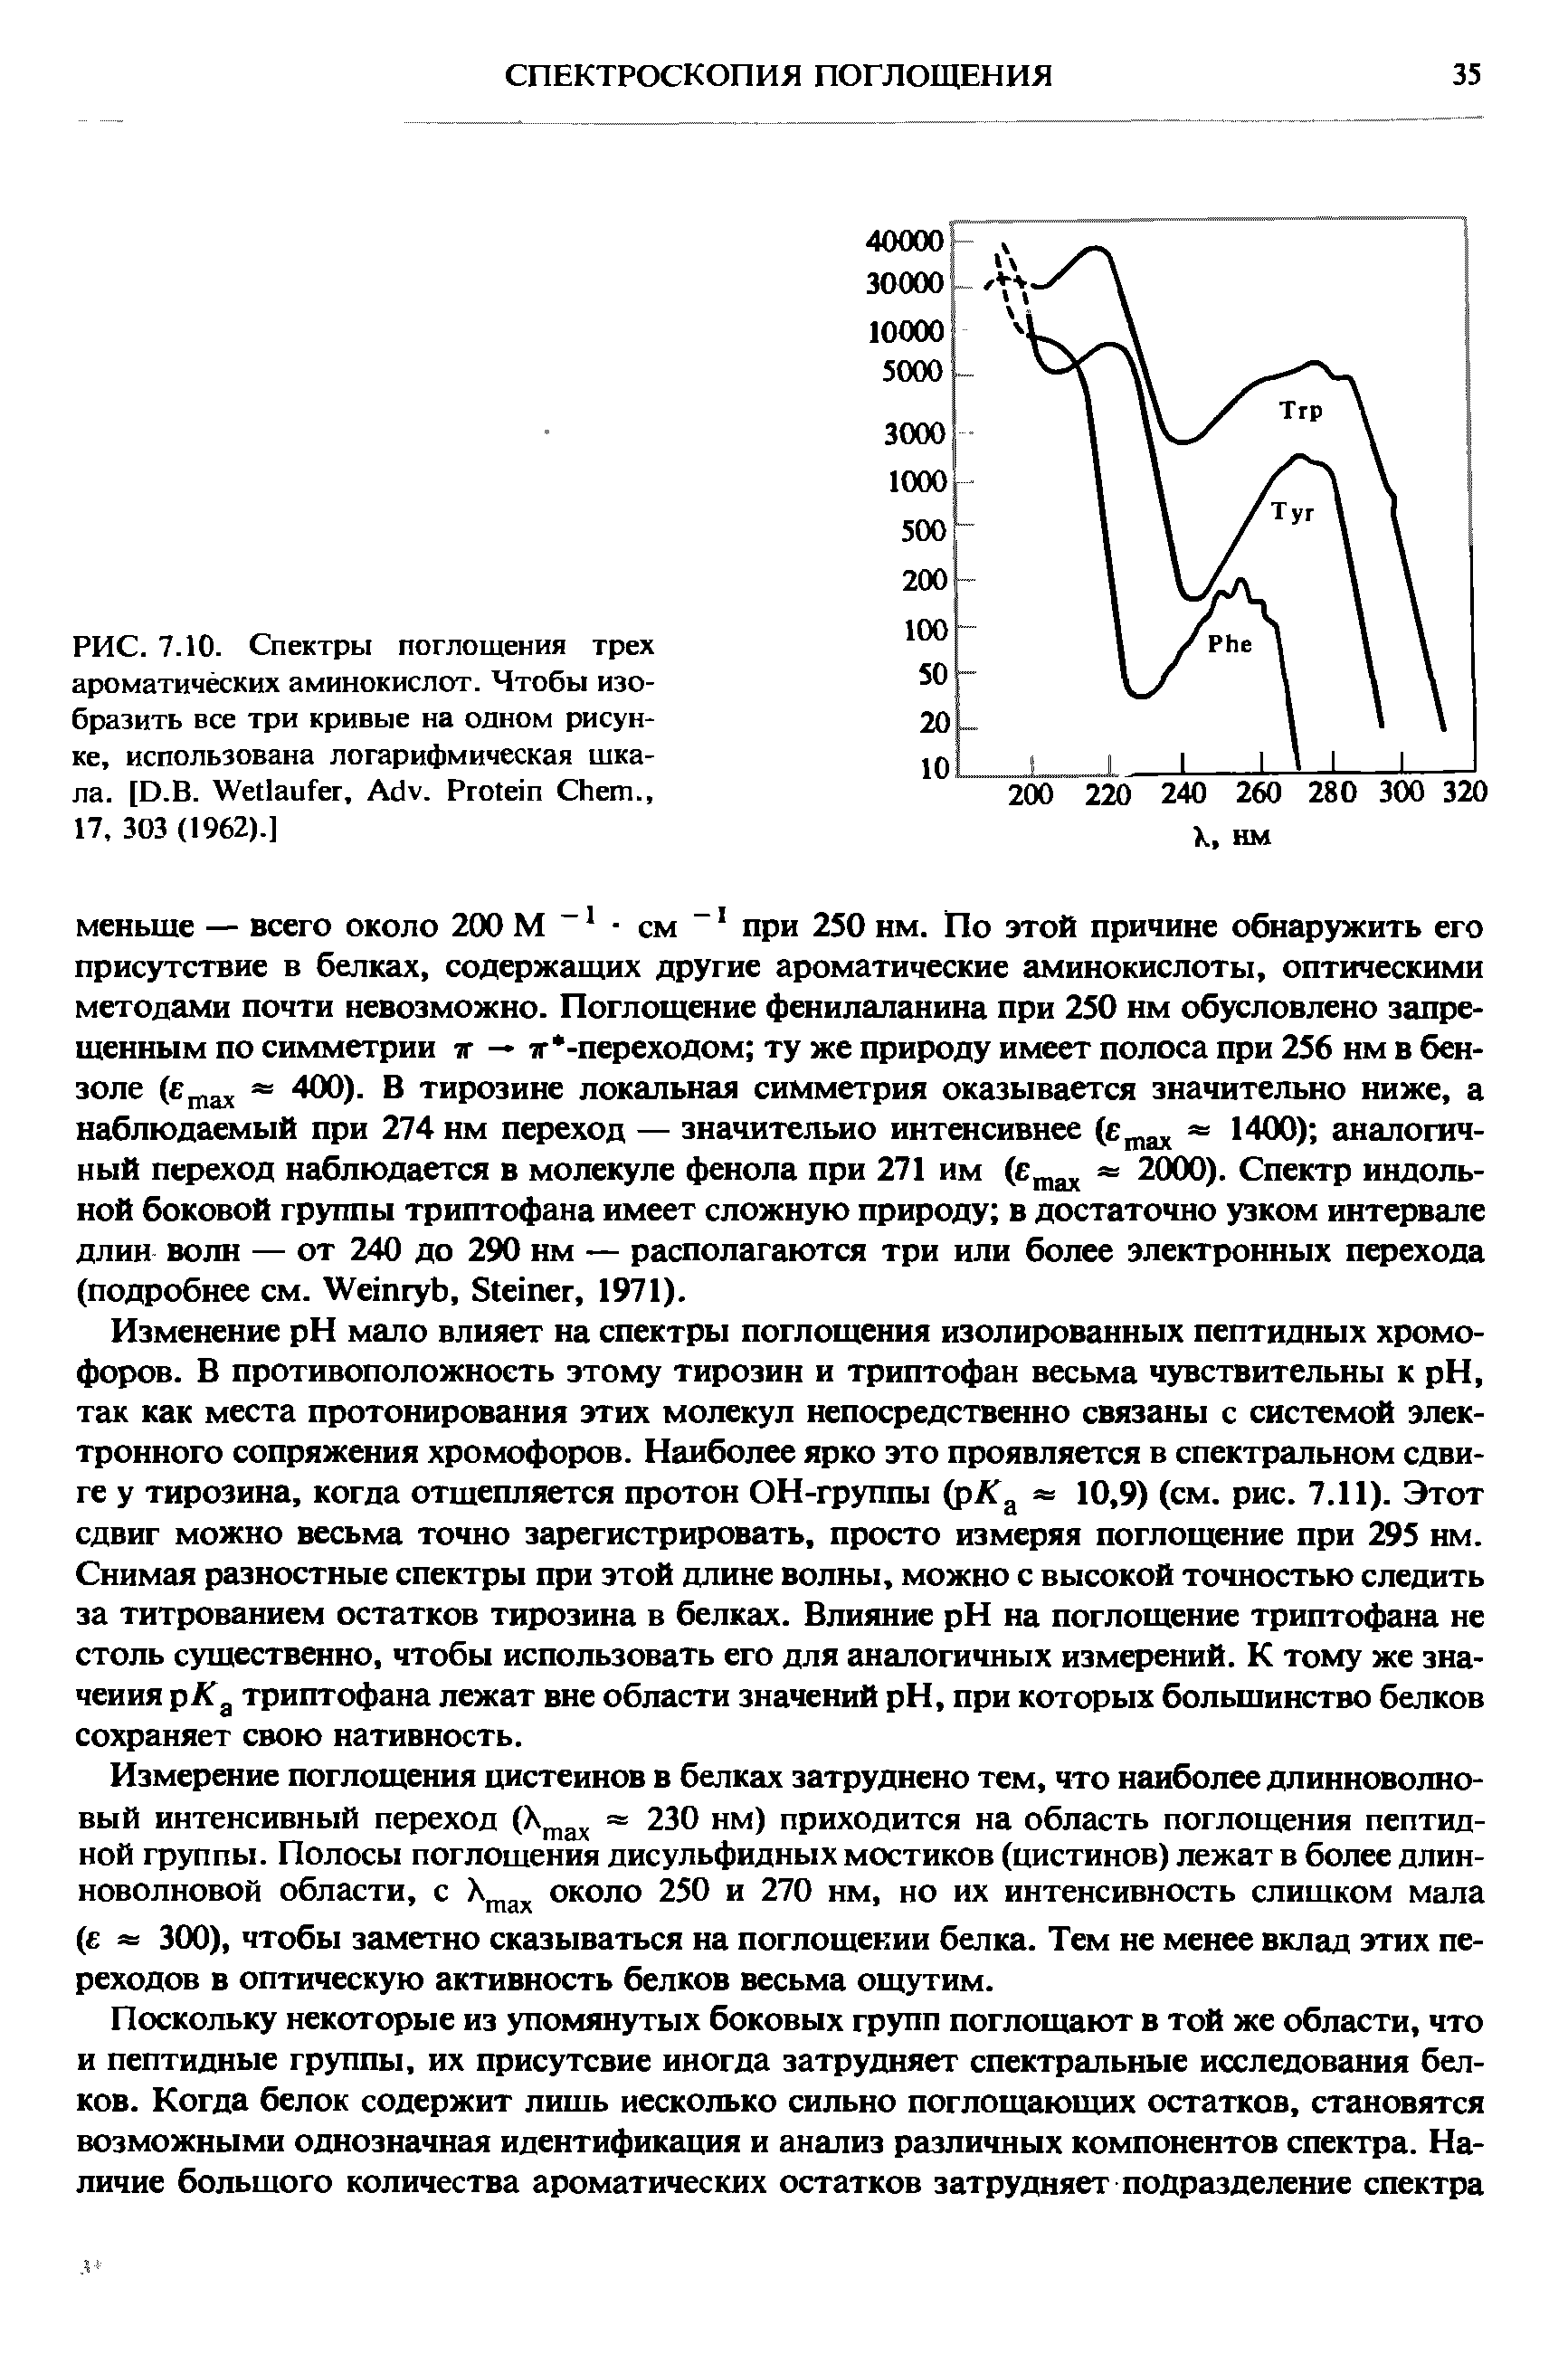 Изменение pH мало влияет на спектры поглощения изолированных пептидных хромофоров. В противоположность этому тирозин и триптофан весьма чувствительны к pH, так как места протонирования этих молекул непосредственно связаны с системой электронного сопряжения хромофоров. Наиболее ярко это проявляется в спектральном сдвиге у тирозина, когда отщепляется протон ОН-группы (рЛТ 10,9) (см. рис. 7.11). Этот сдвиг можно весьма точно зарегистрировать, просто измеряя поглощение при 295 нм. Снимая разностные спектры при этой длине волны, можно с высокой точностью следить за титрованием остатков тирозина в белках. Влияние pH на поглощение триптофана не столь существенно, чтобы использовать его для аналогичных измерений. К тому же значения рКд триптофана лежат вне области значений pH, при которых большинство белков сохраняет свою нативность.